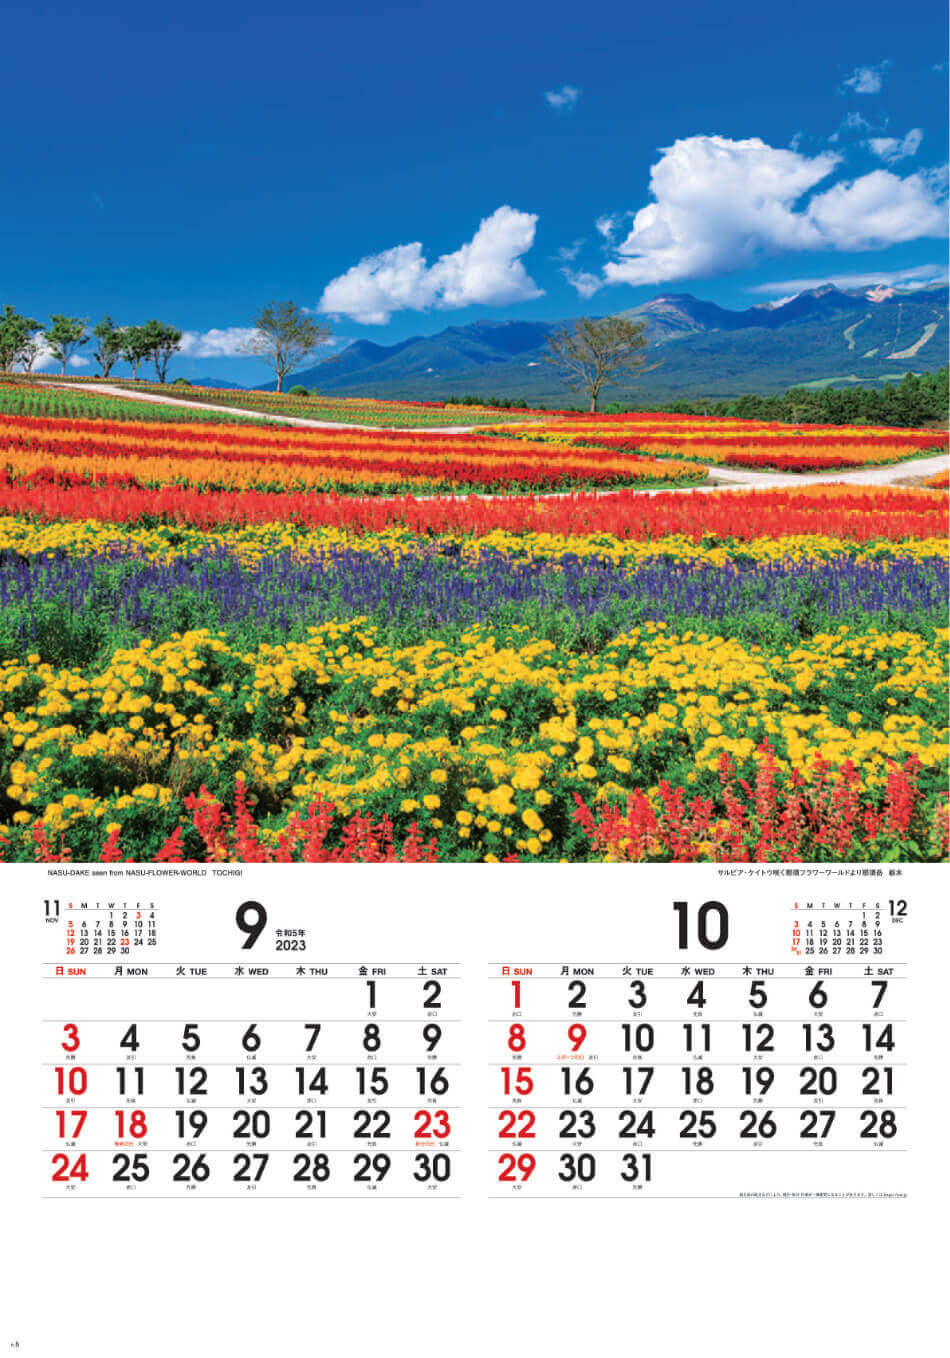 9/10月 那須フラワーワールドより那須岳(栃木) 四季彩峰(フィルムカレンダー） 2023年カレンダーの画像